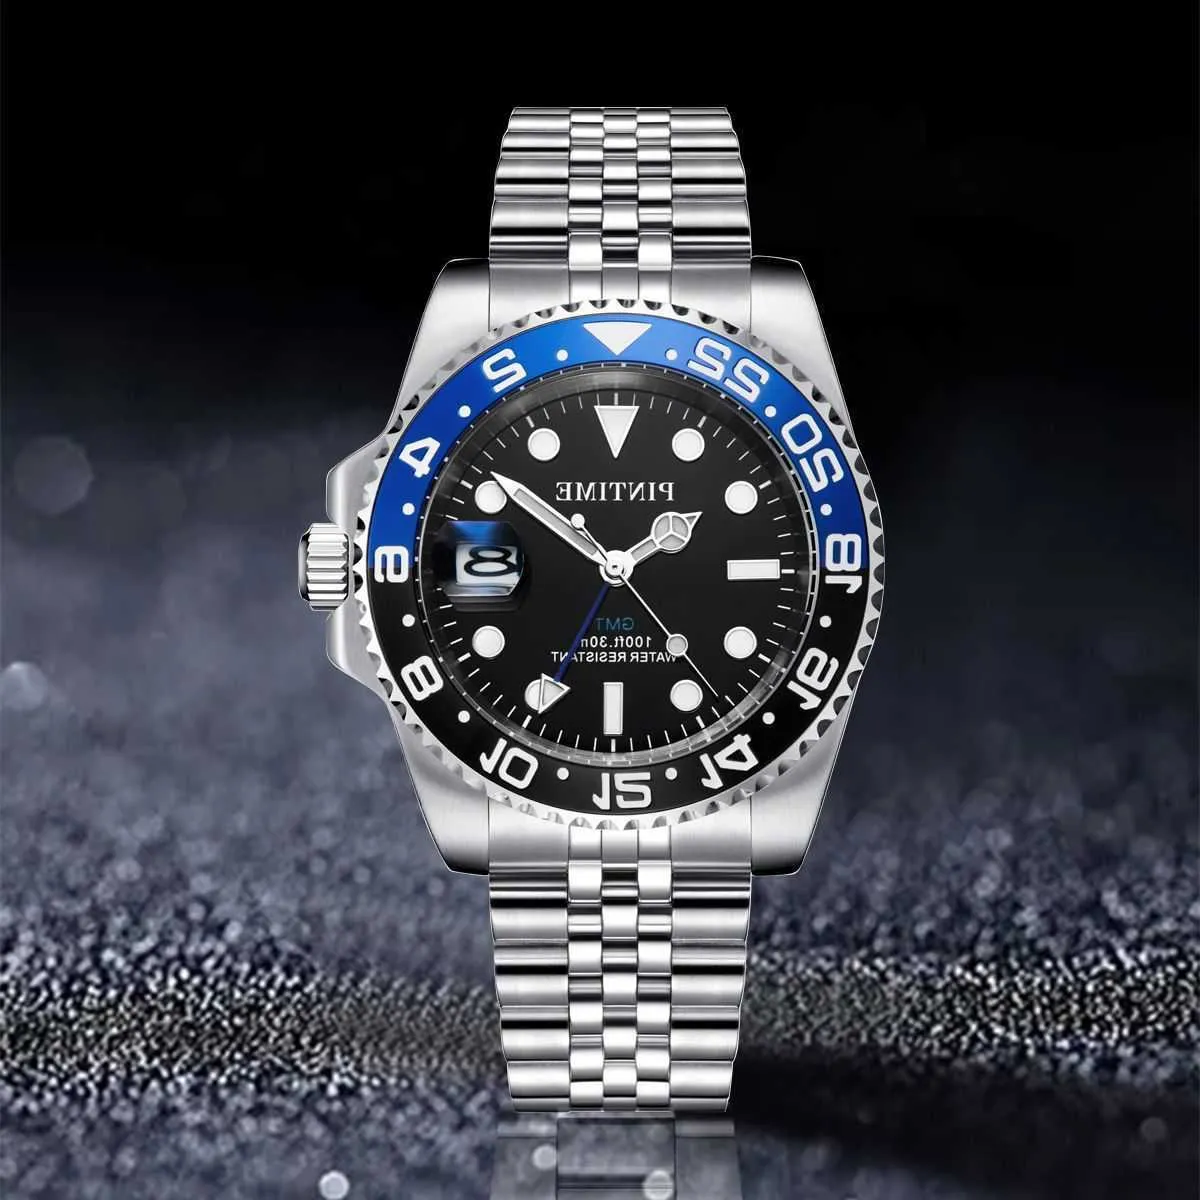 Montres de luxe Ro-lxx USA Boutique de montres haut de gamme en ligne PINTIME Pinshi diffusion en direct calendrier en acier inoxydable quartz étanche lumineux avec boîte-cadeau JI9M